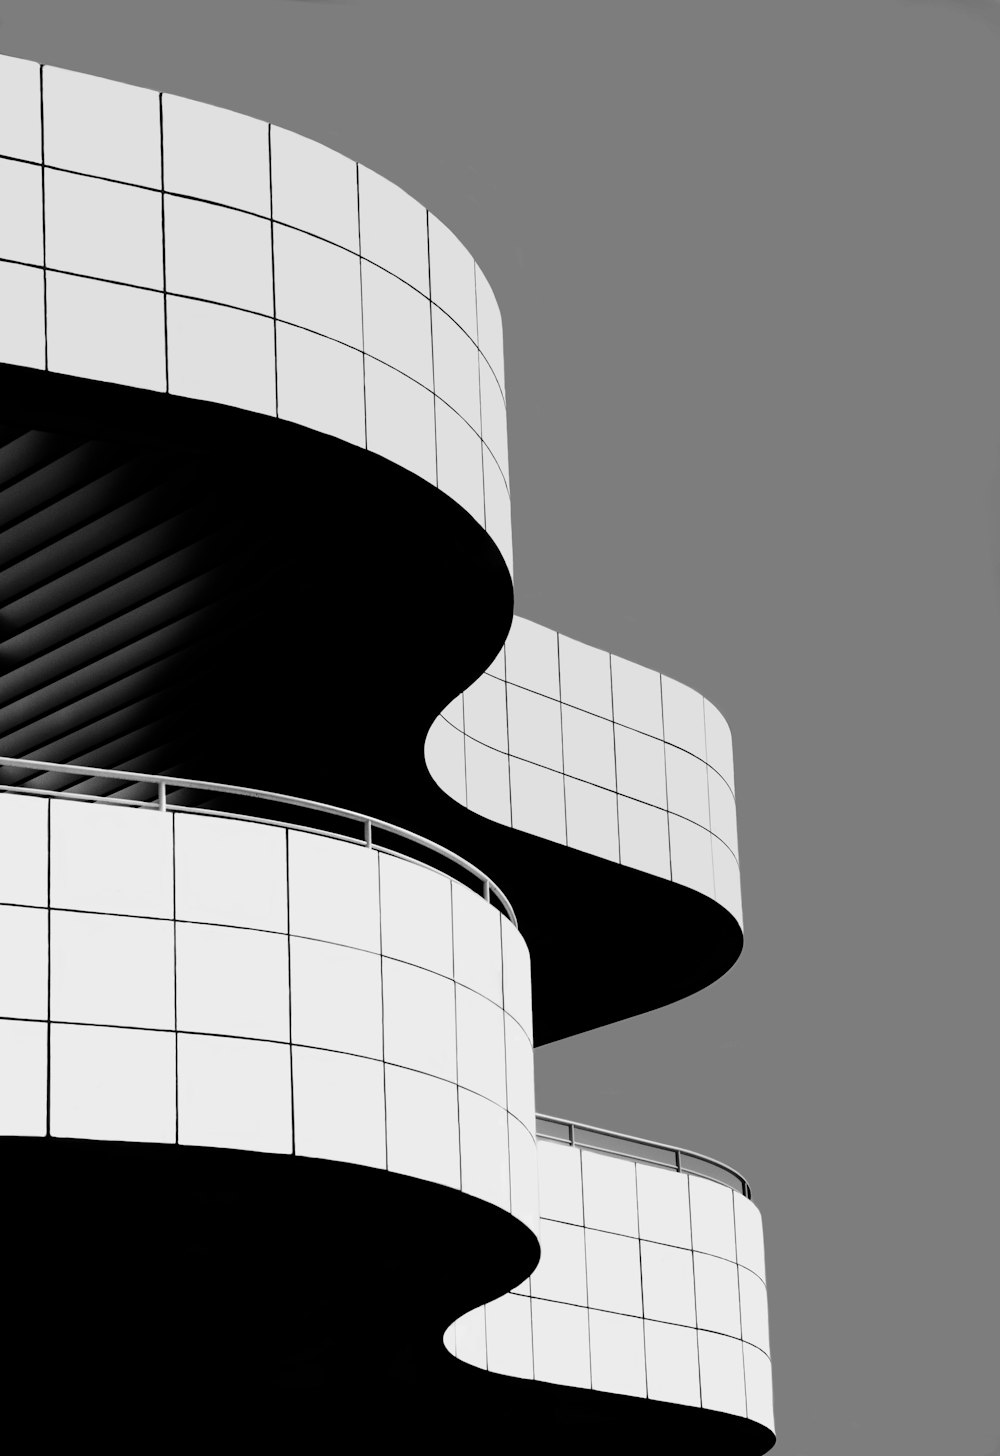 Edificio de hormigón blanco y negro